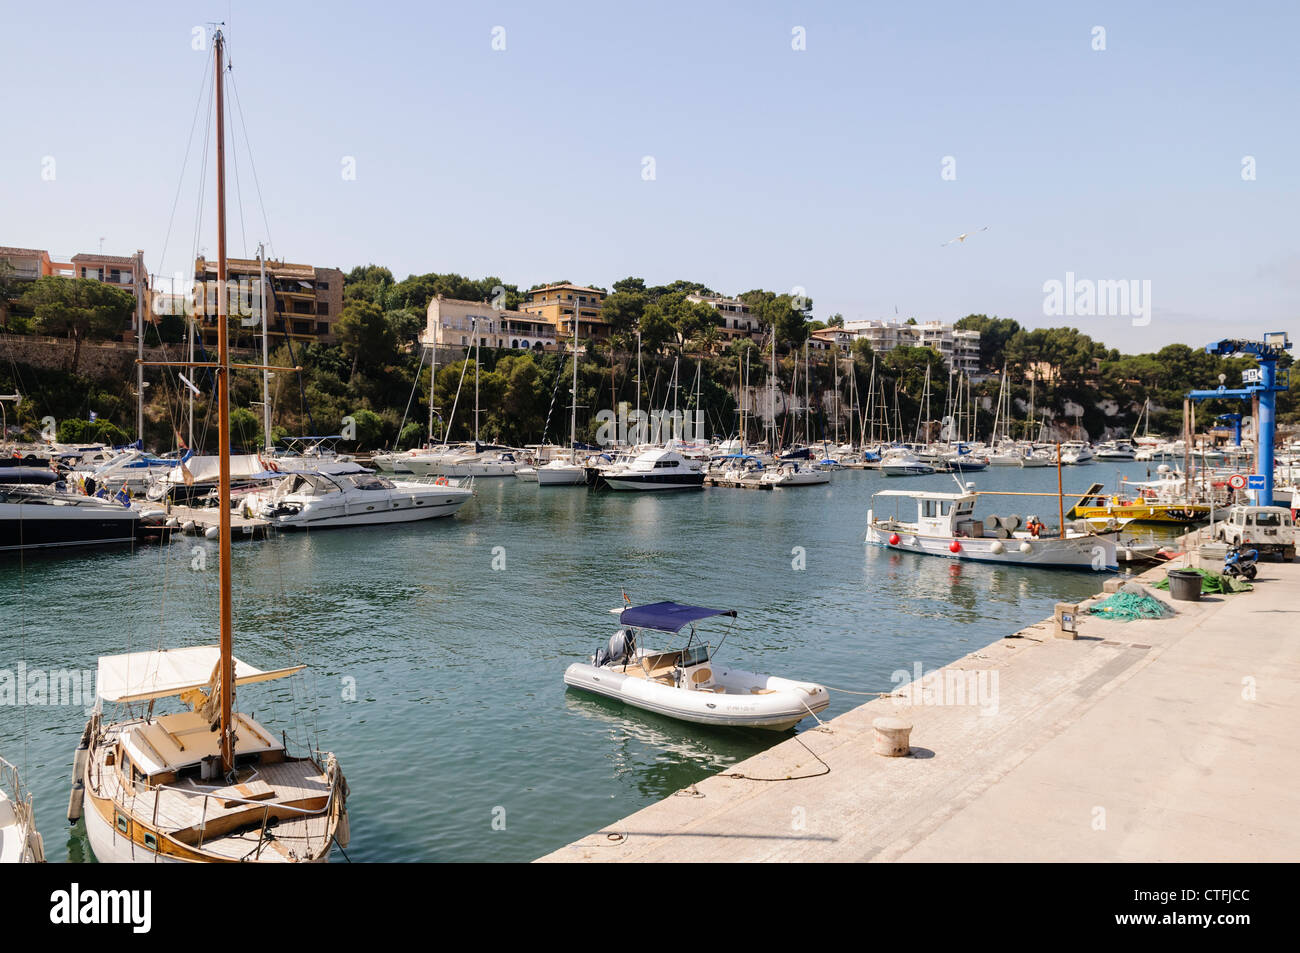 Boats moored at Portochristo, Mallorca/Majorca Stock Photo